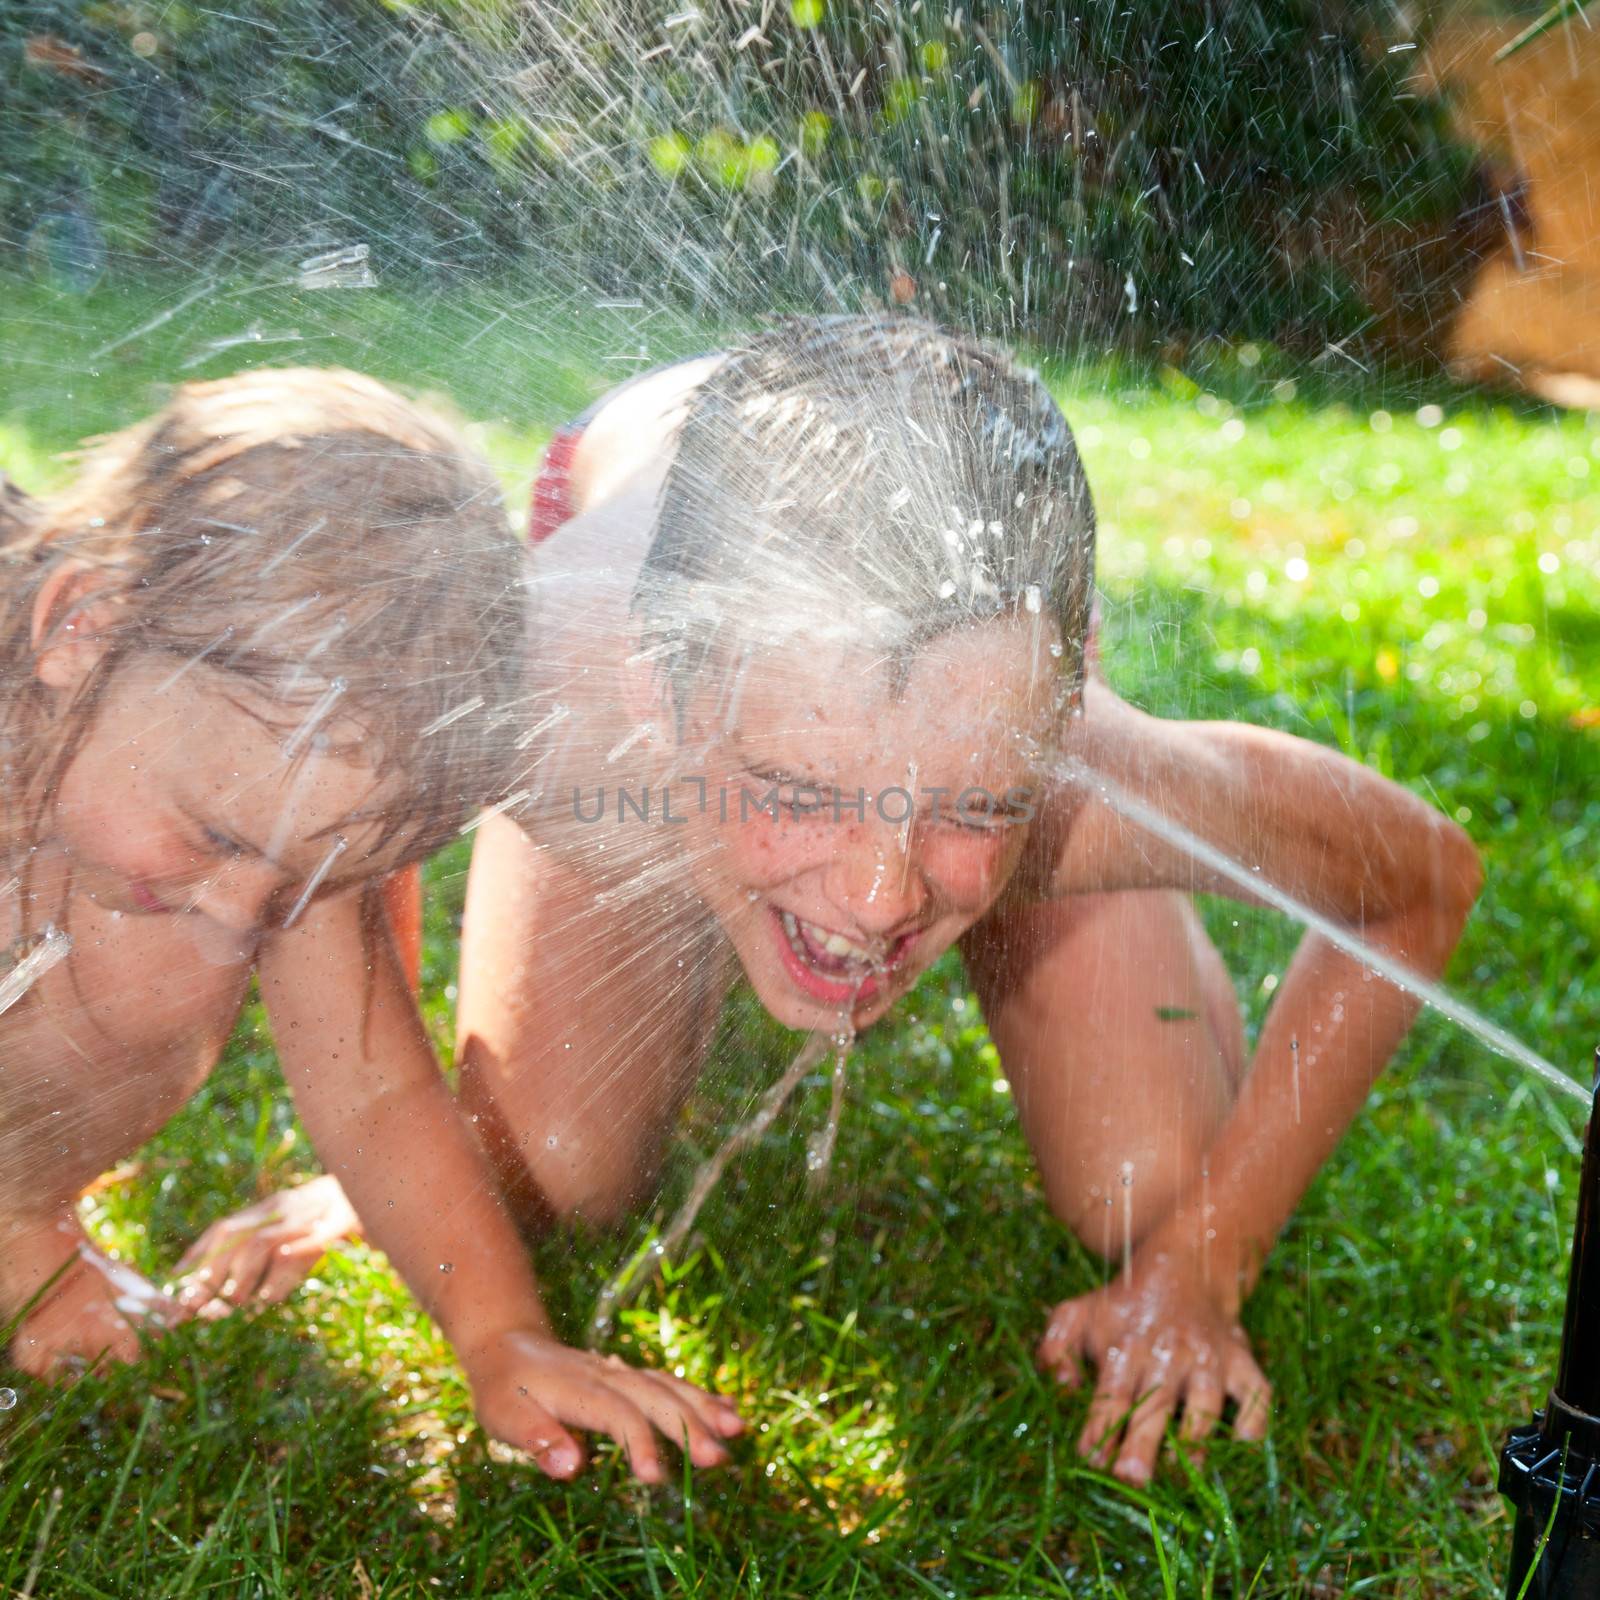 Children playing in a summer garden by naumoid